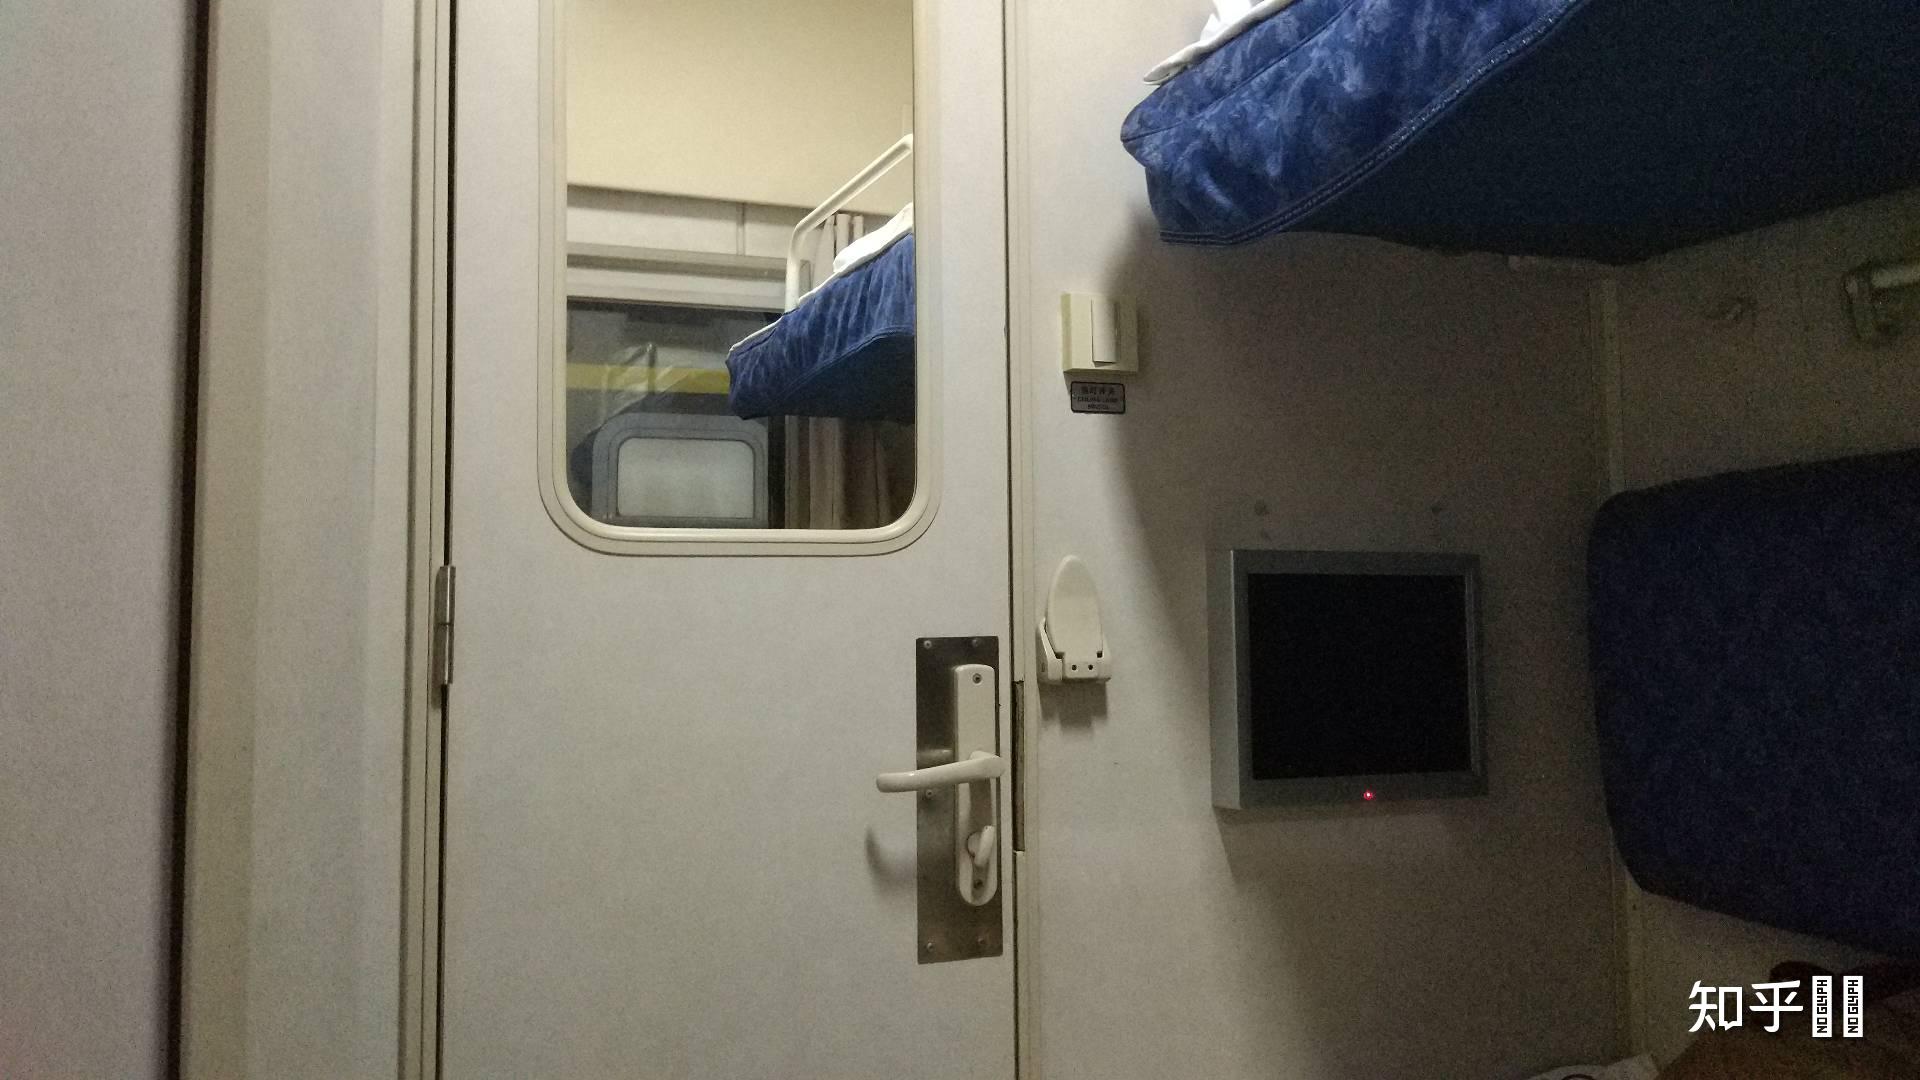 中国火车软卧是什么样子的